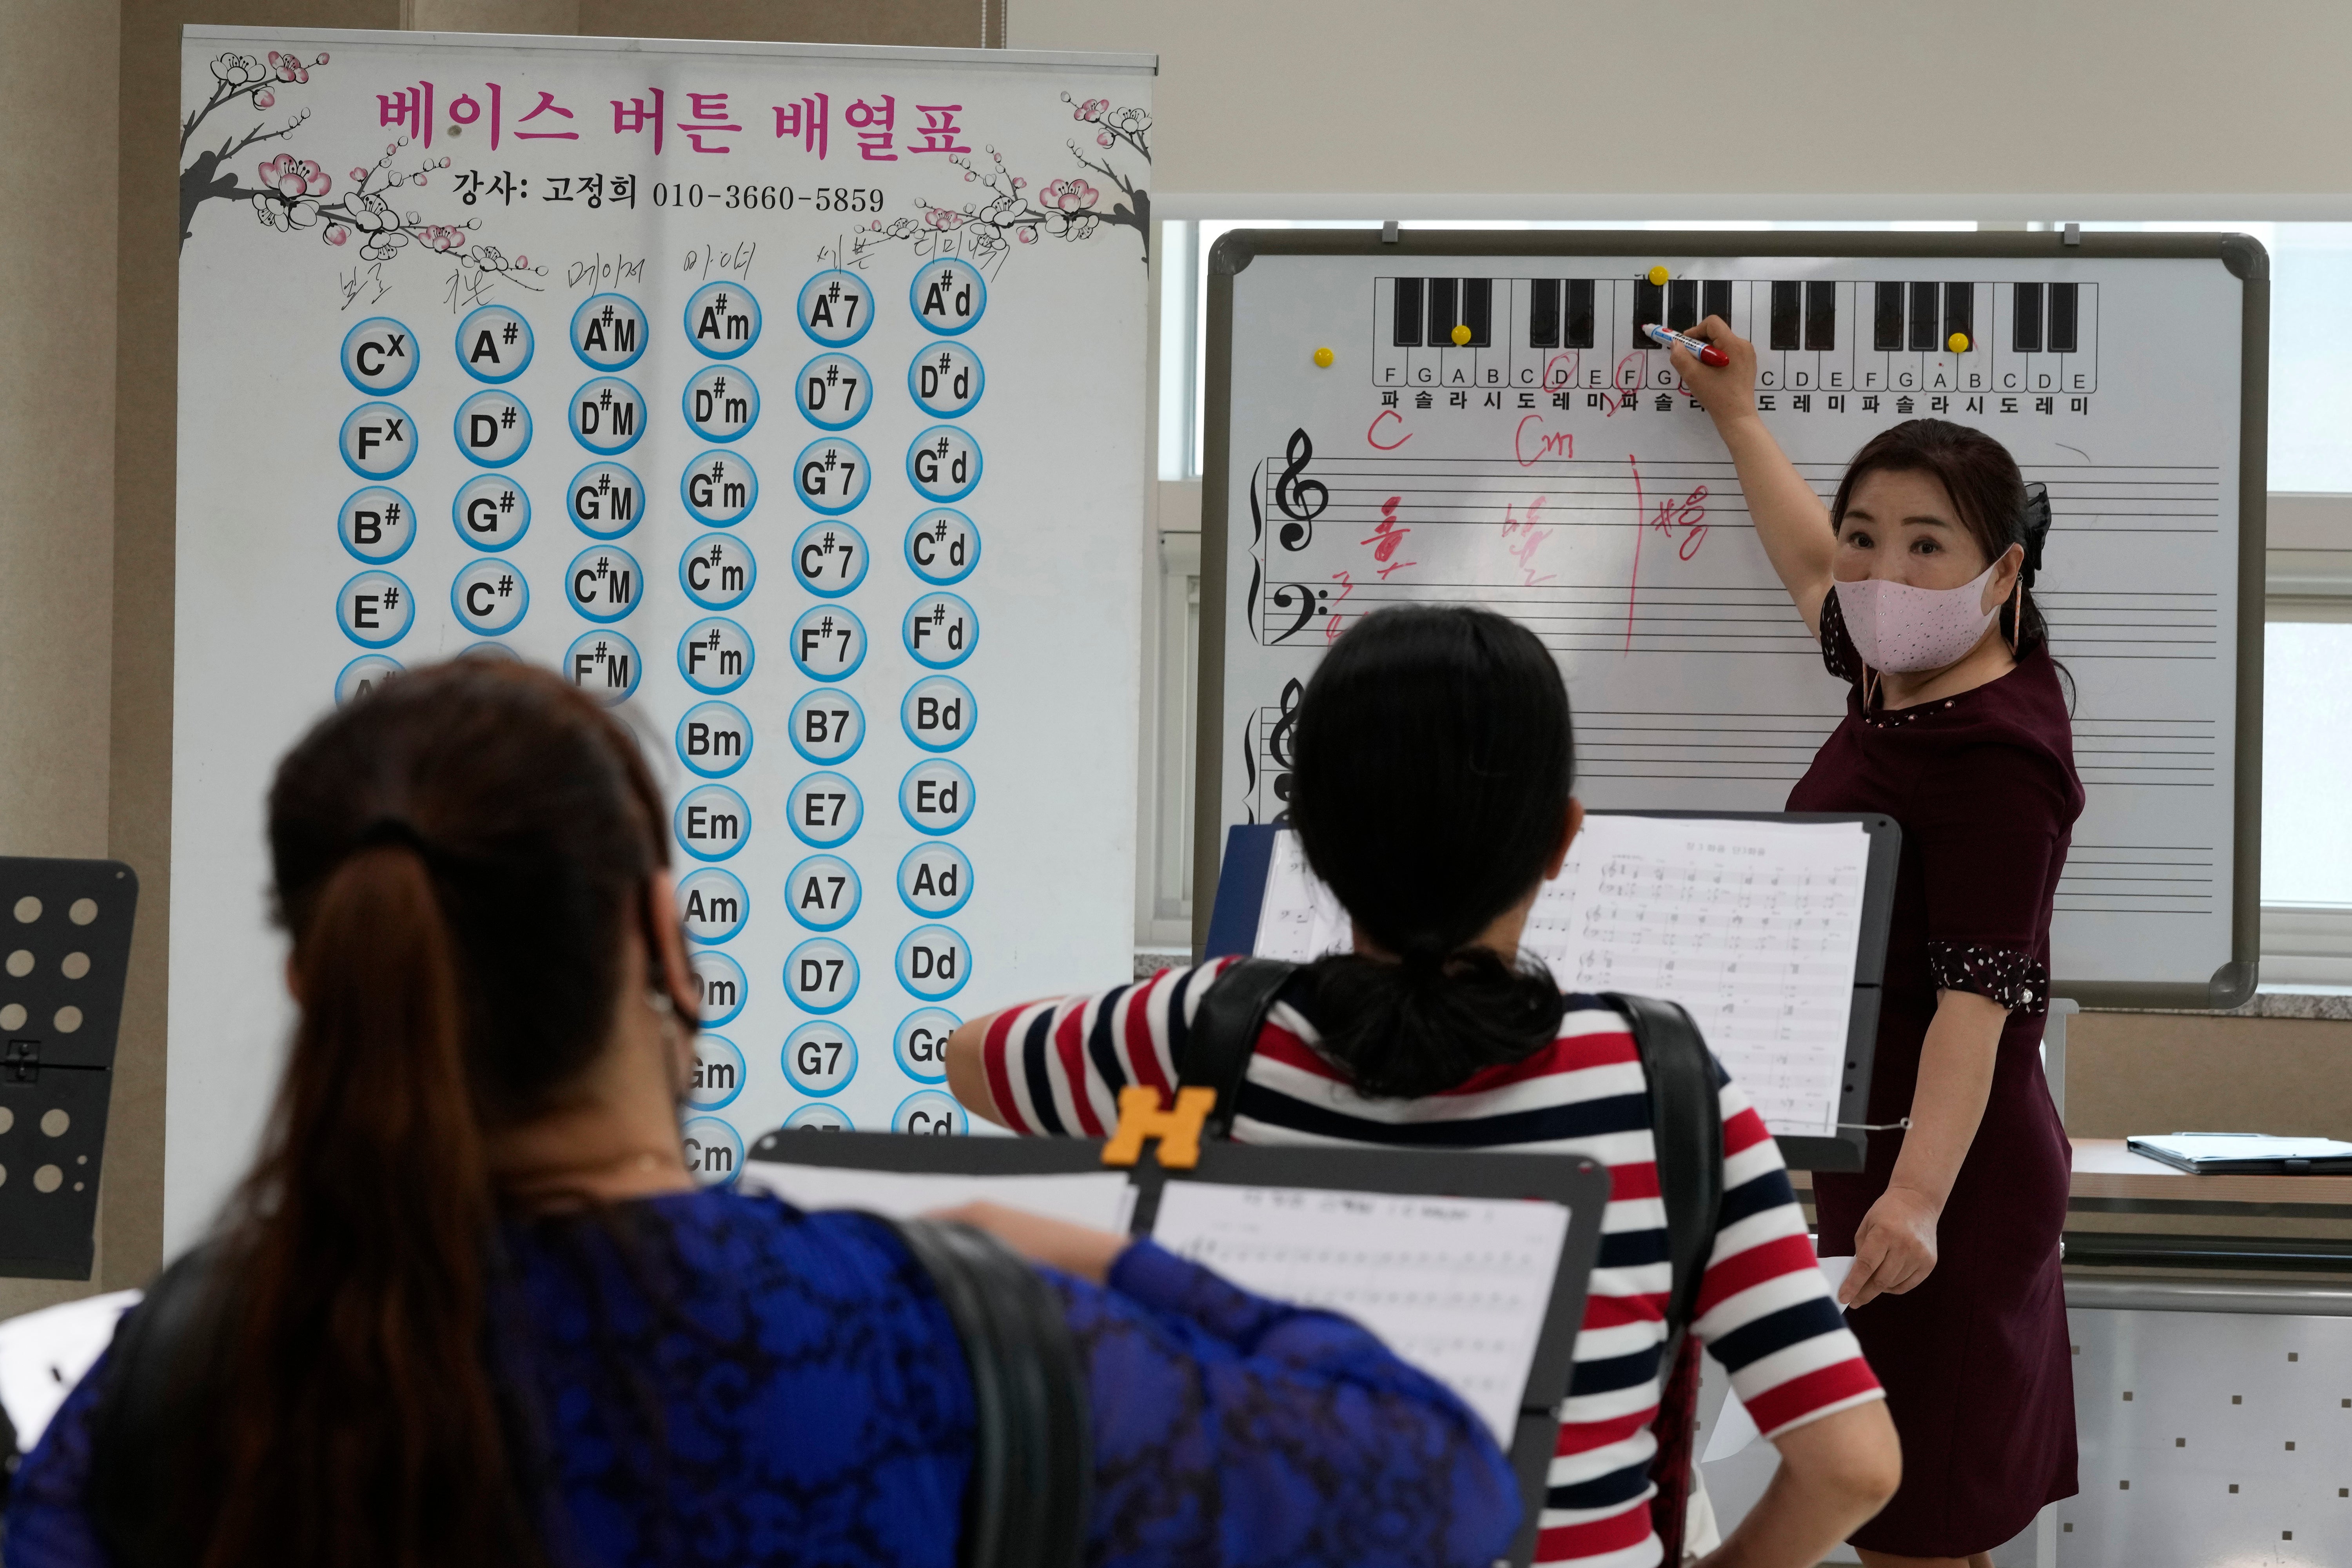 Koreas Defectors' Integration